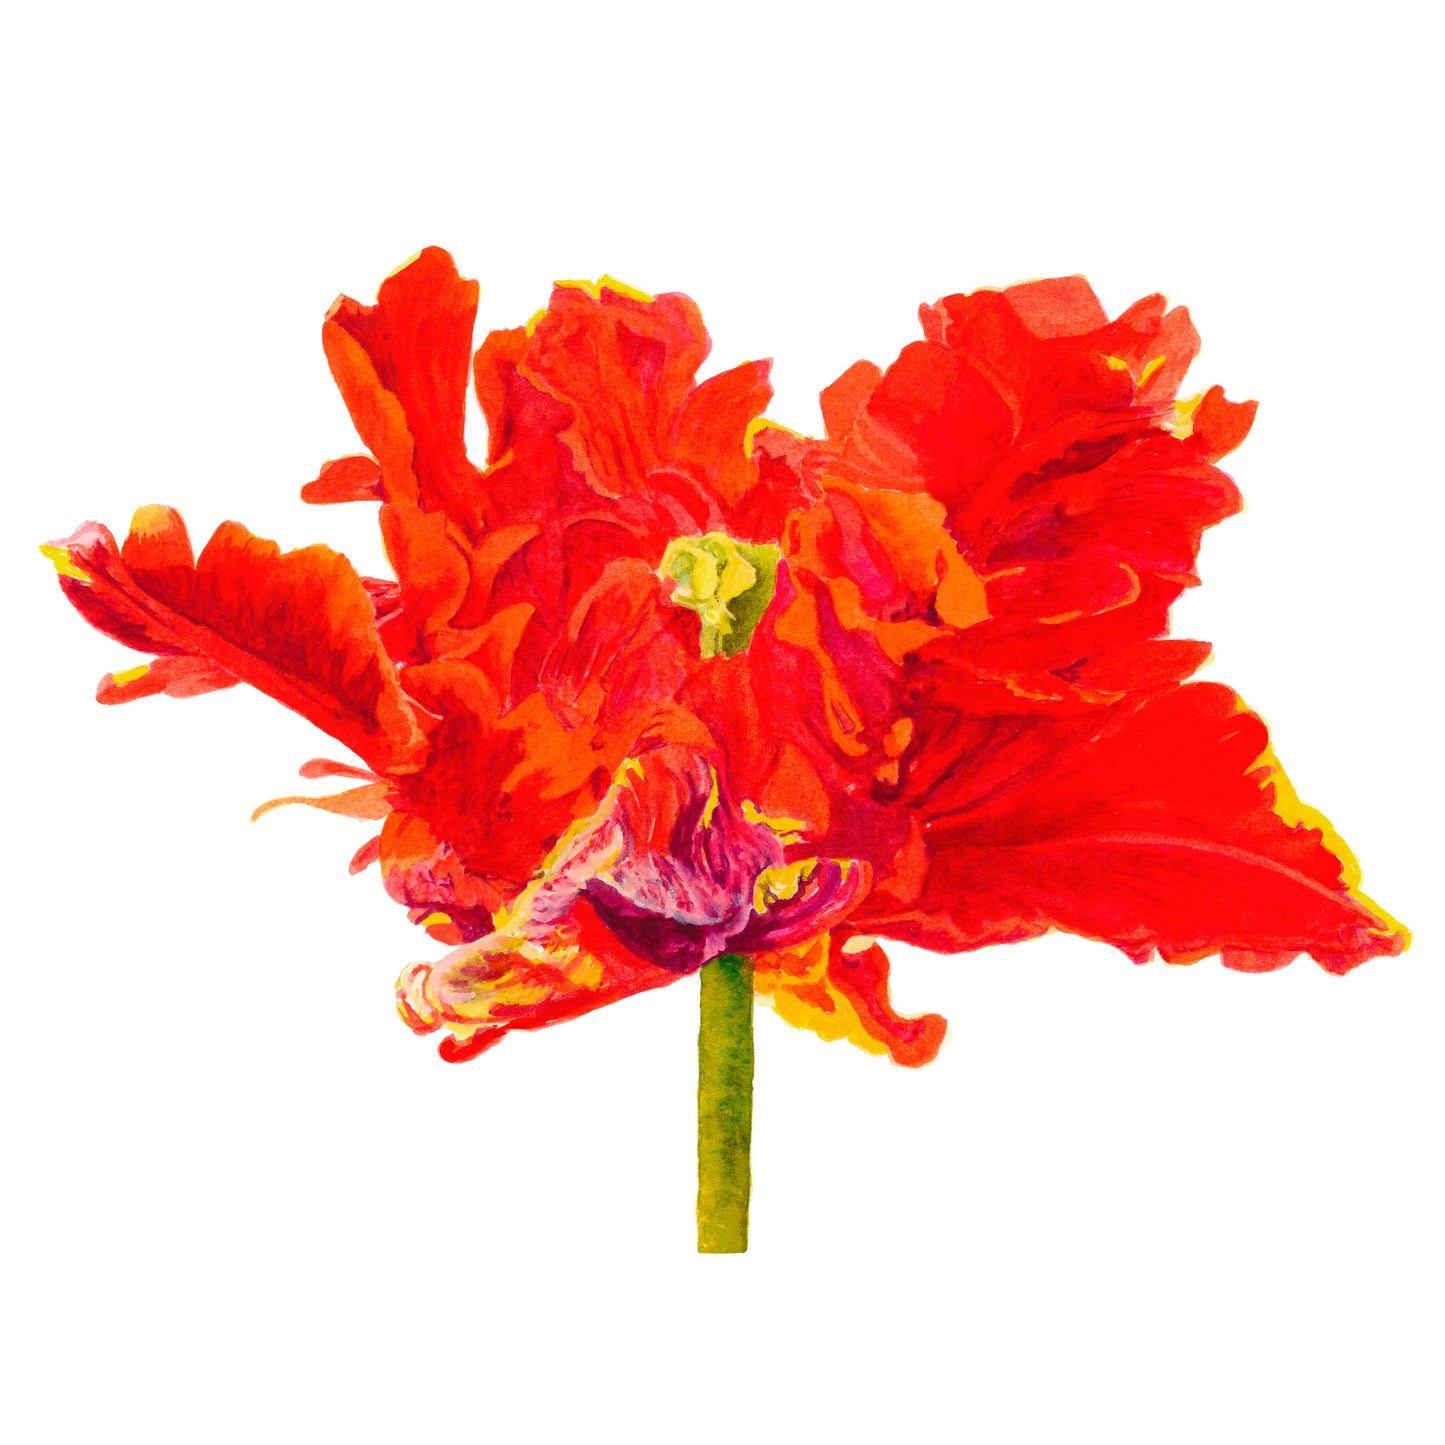 Orange Parrot Tulip, Fine Art Print